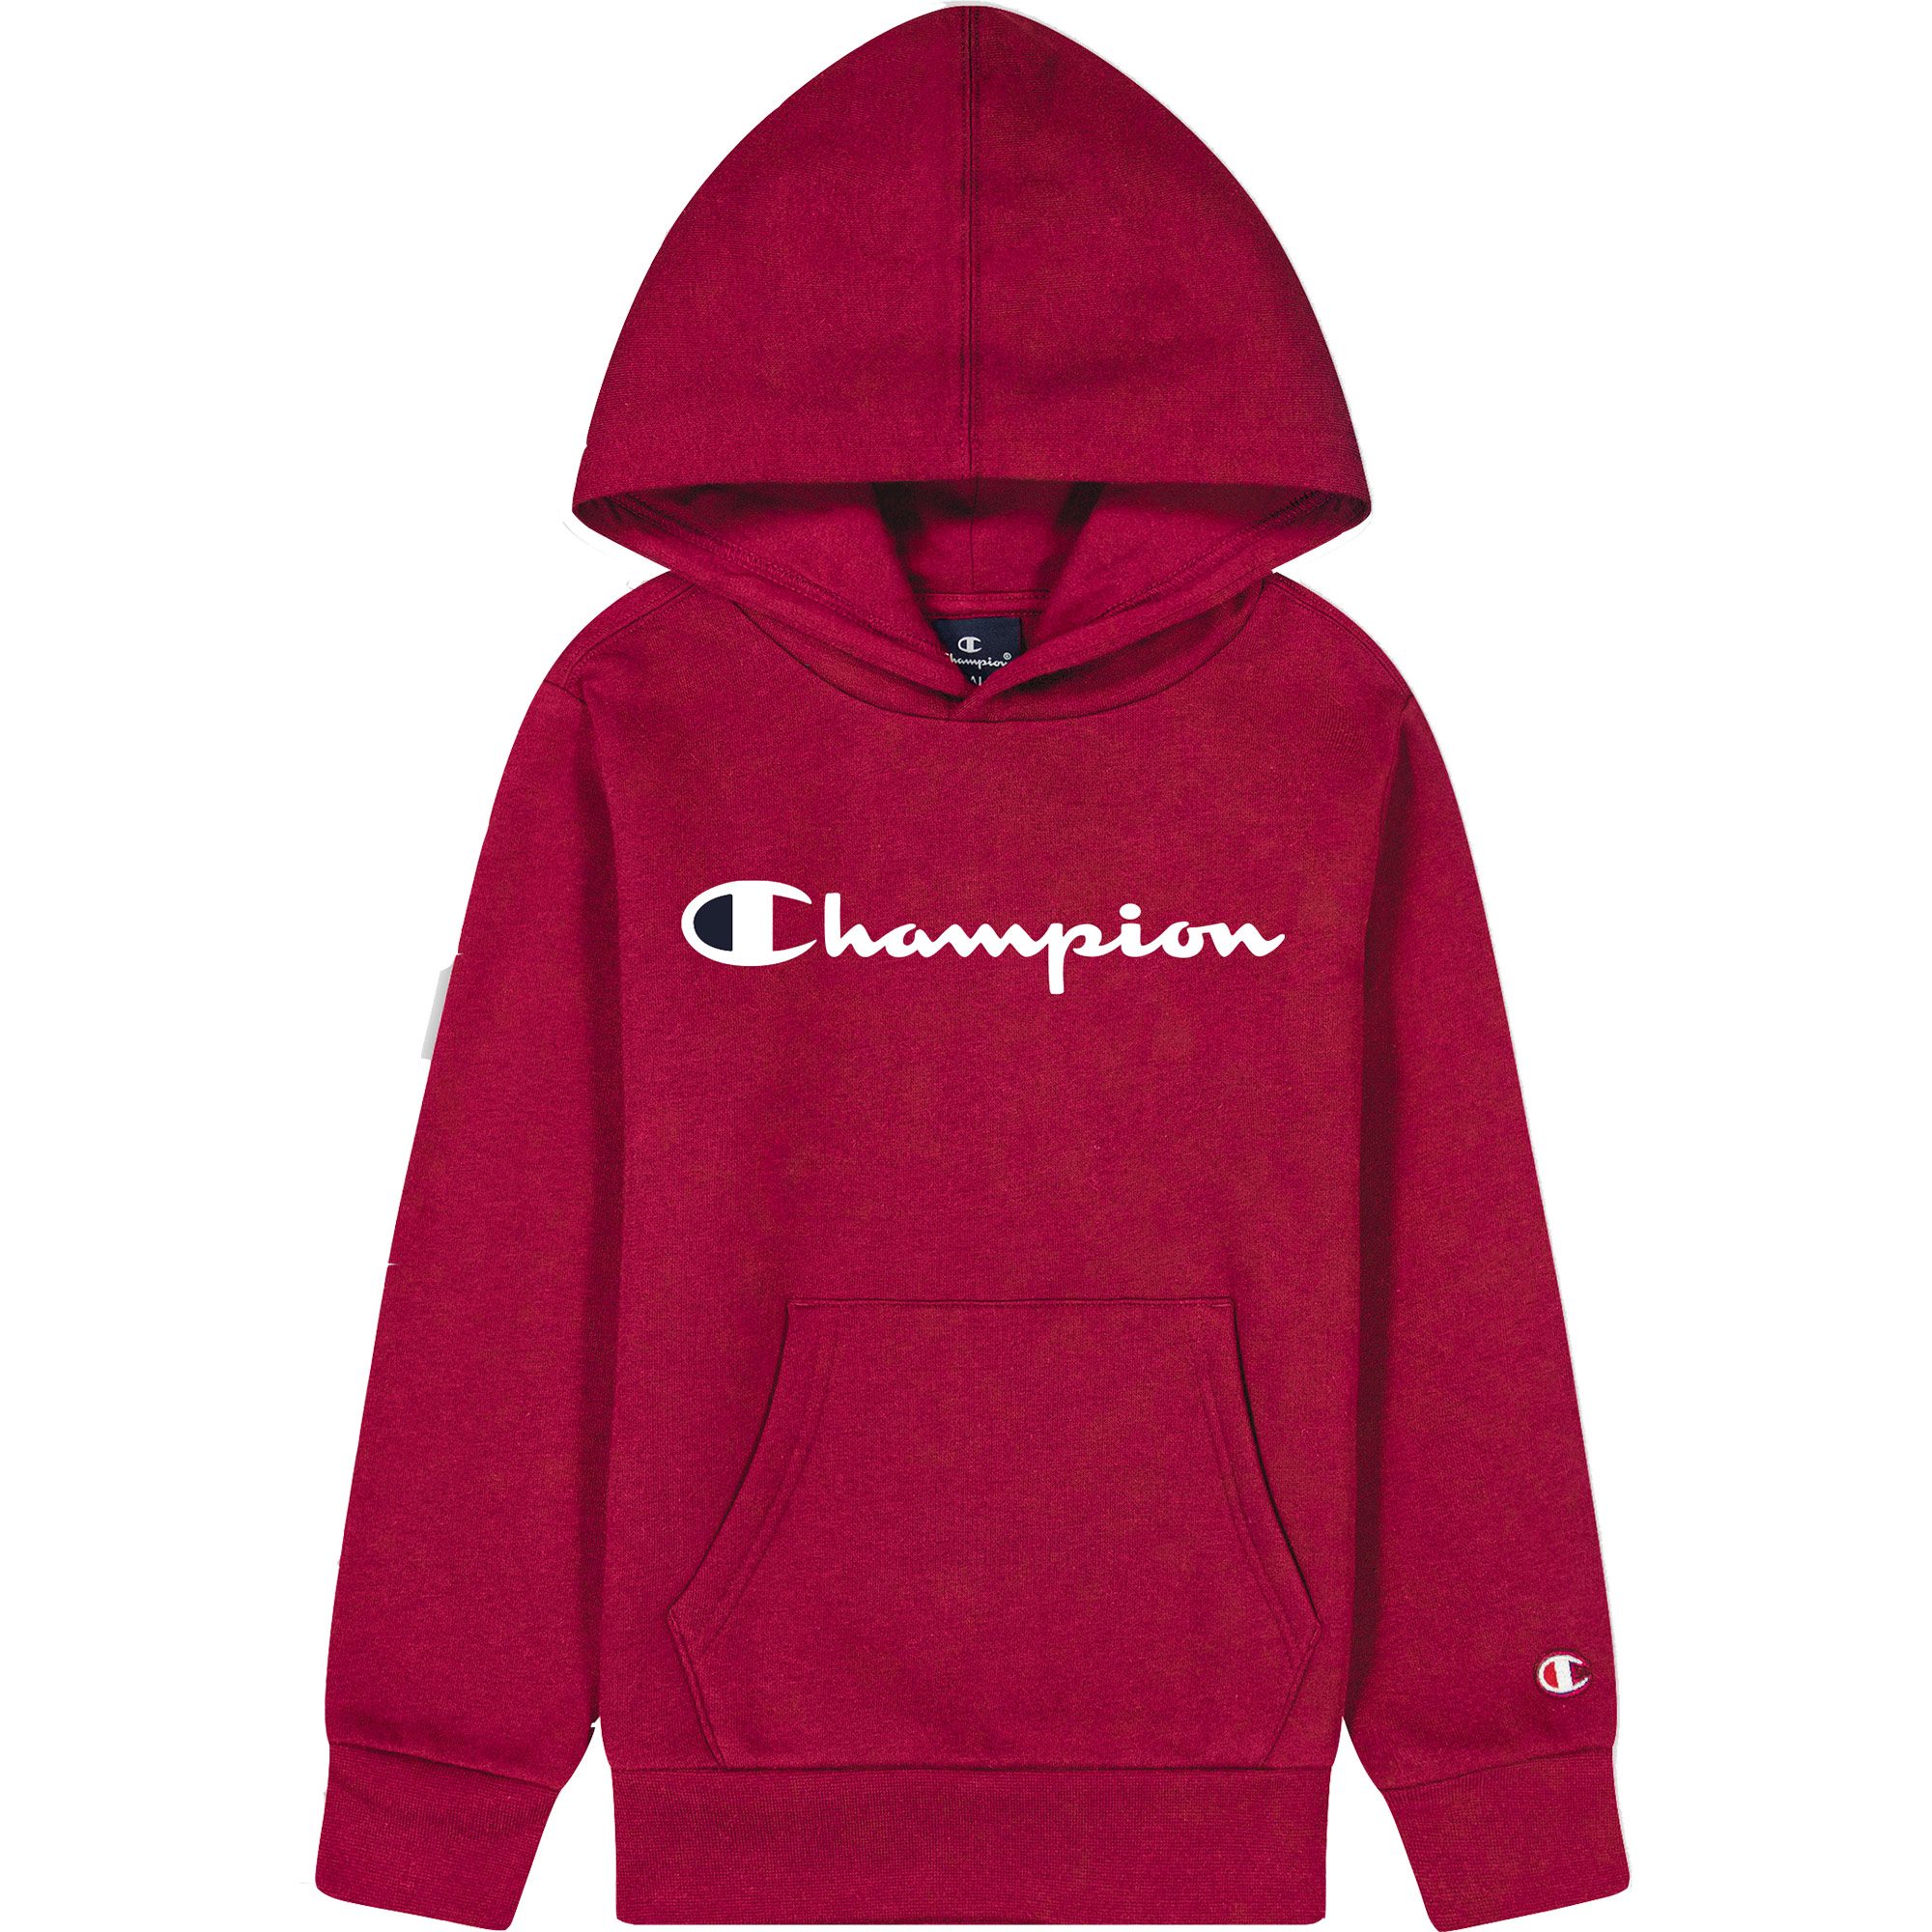 Champion - Hooded Sweatshirt im kaufen Jungen Sport tibetan Shop red Bittl